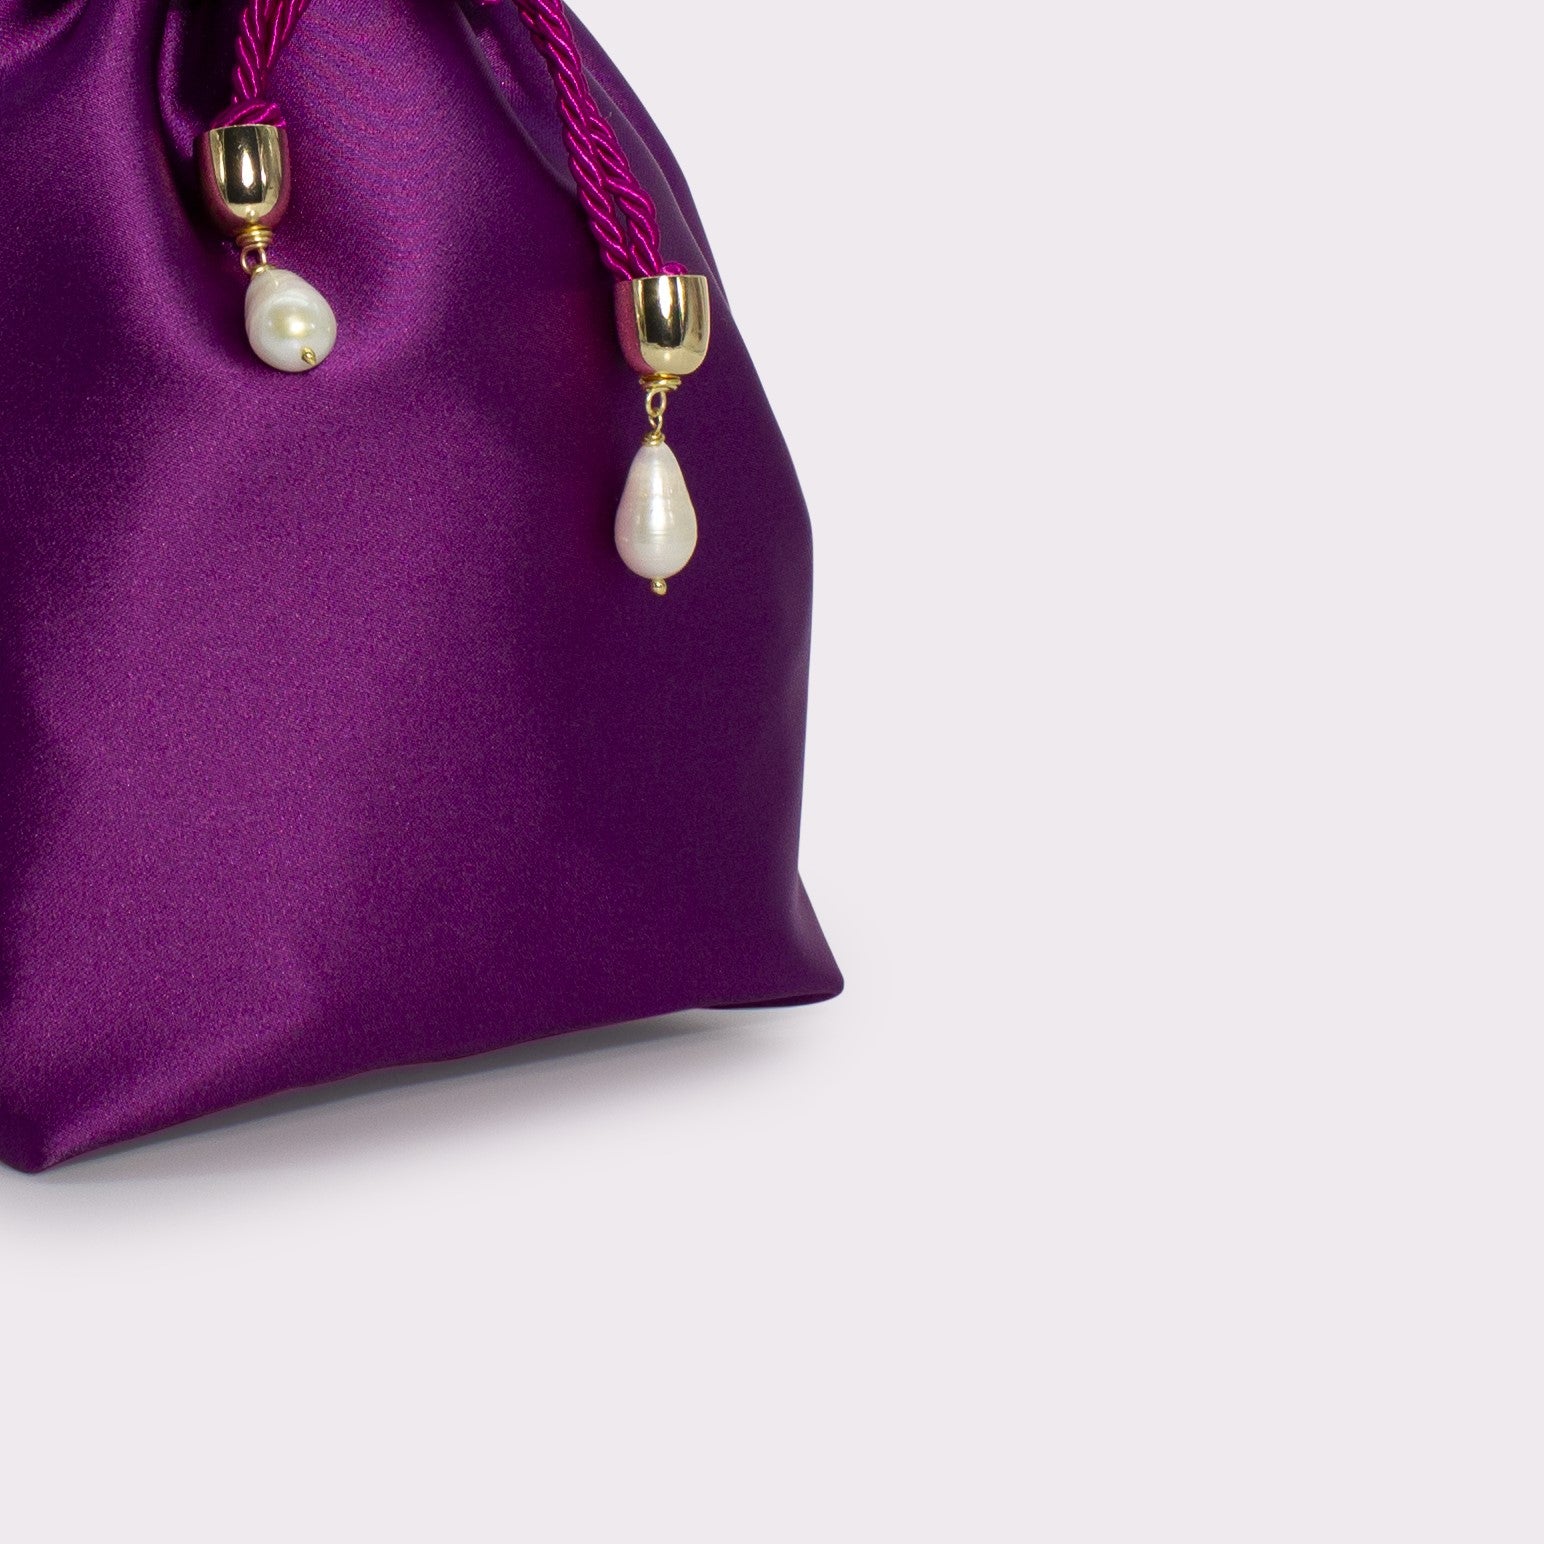 Giulia flat bag in colorazione petunia